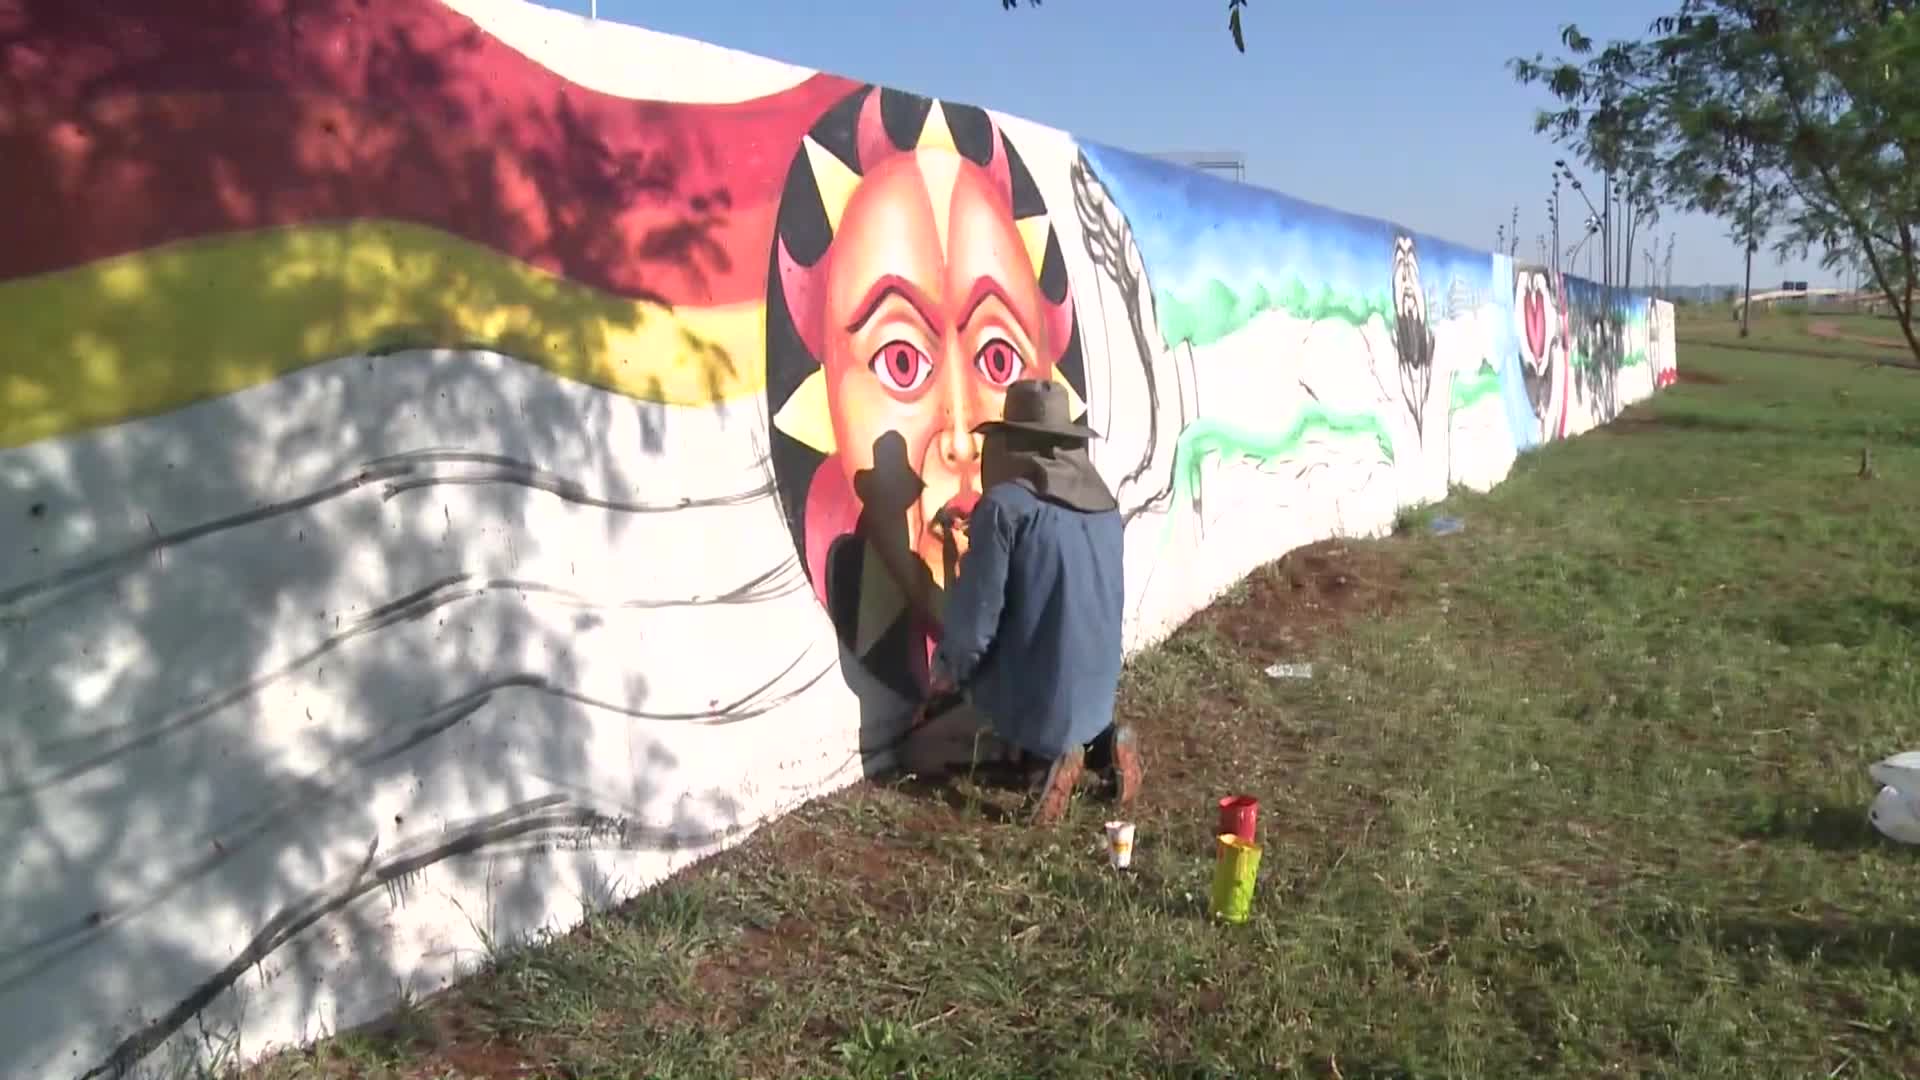 “La frontera nos une”: comenzó a pintarse el mural del centro de frontera 